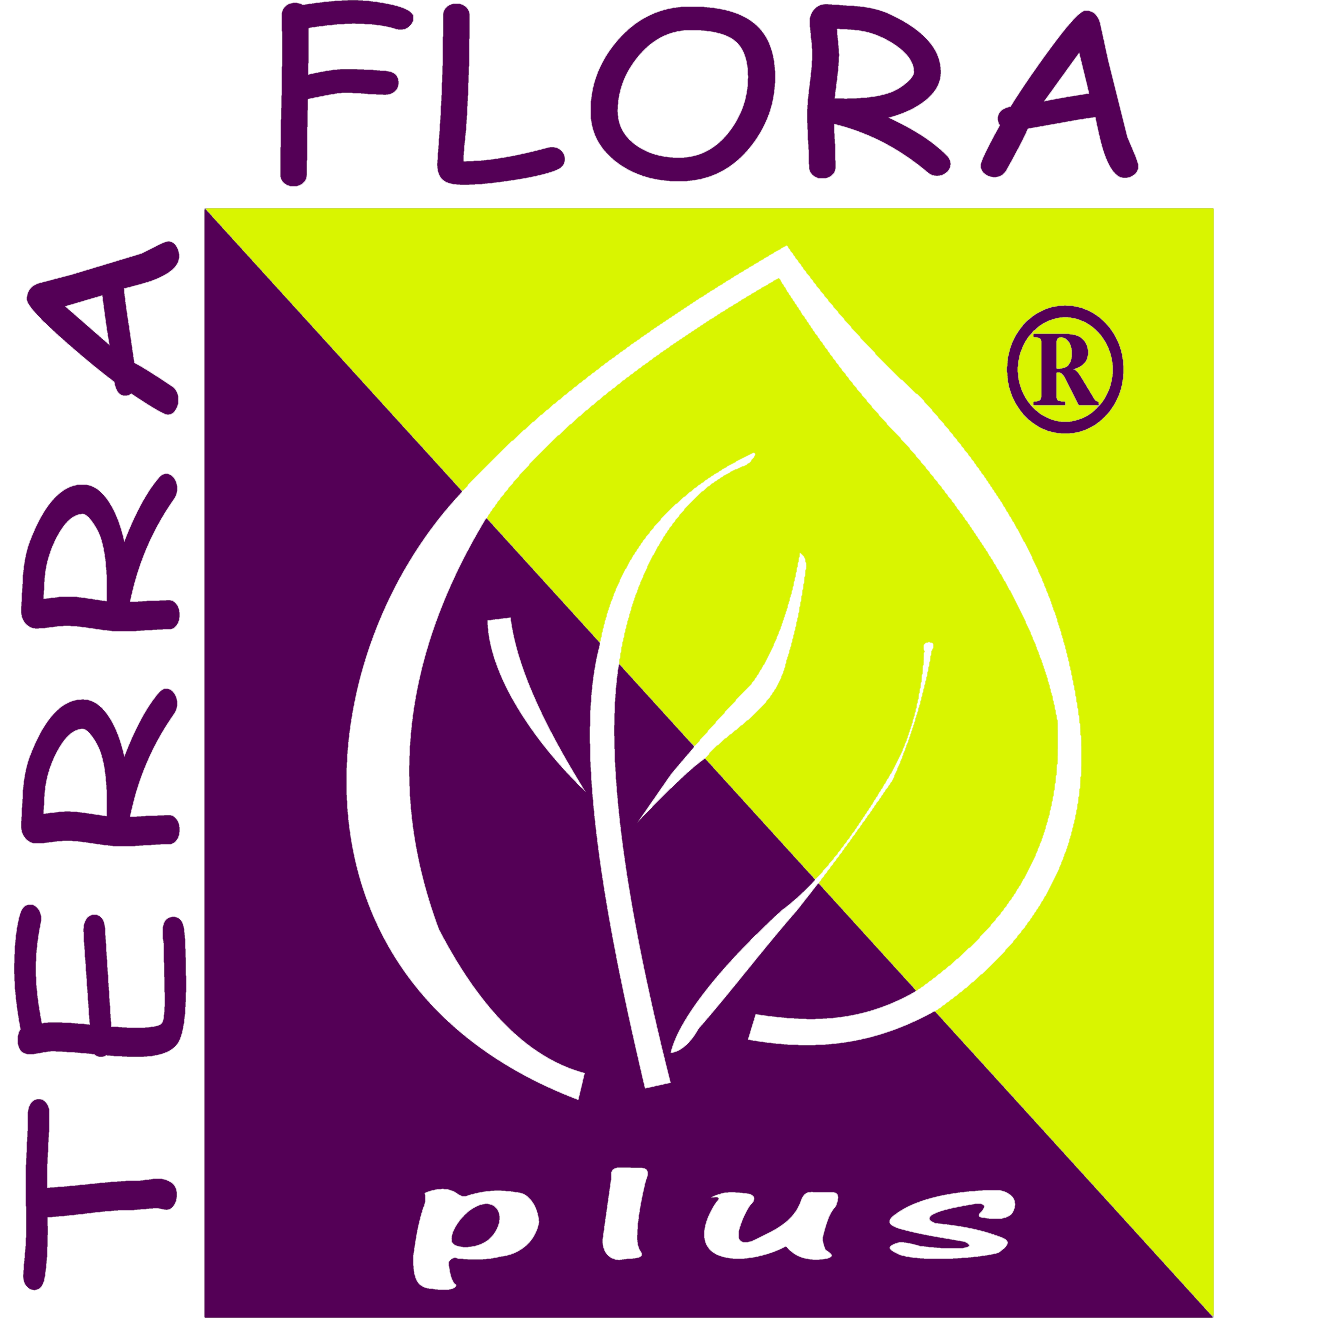 Empresa situada al norte de España en la región de Cantabria especializada en artículos de floristería y decoración de la casa y jardín